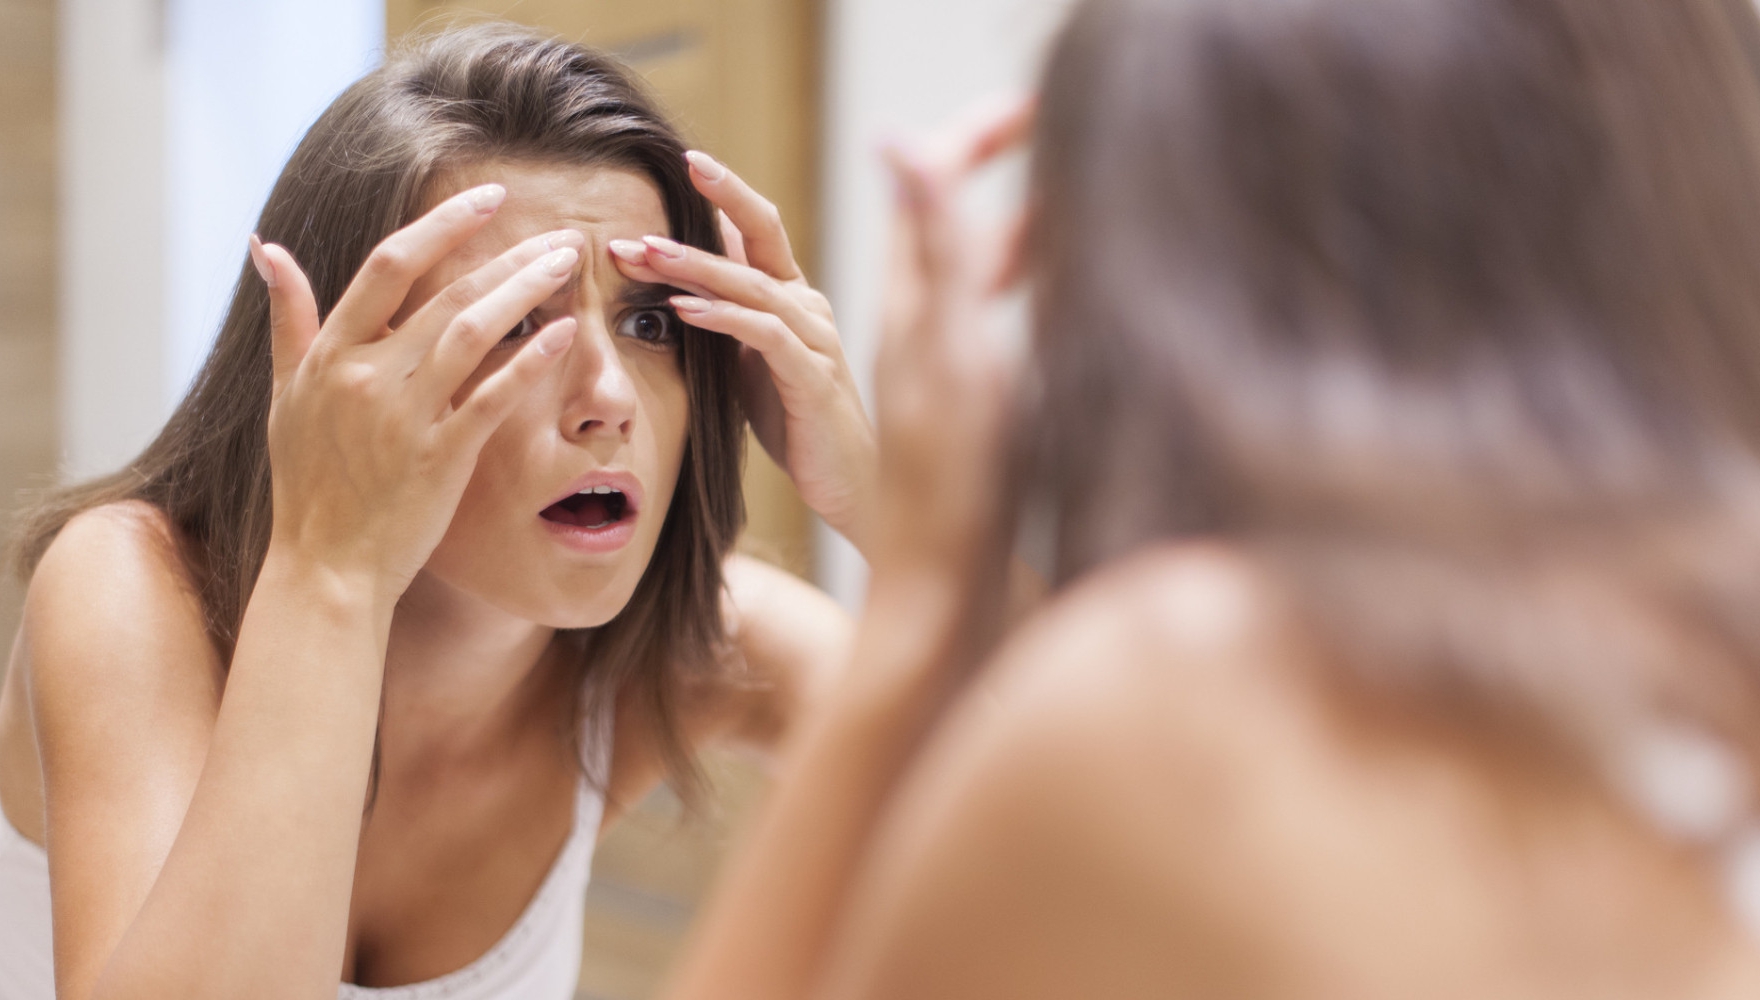 4 mituri false despre acnee. Nu apare doar la ADOLESCENȚI și nu e cauzată de igiena precară